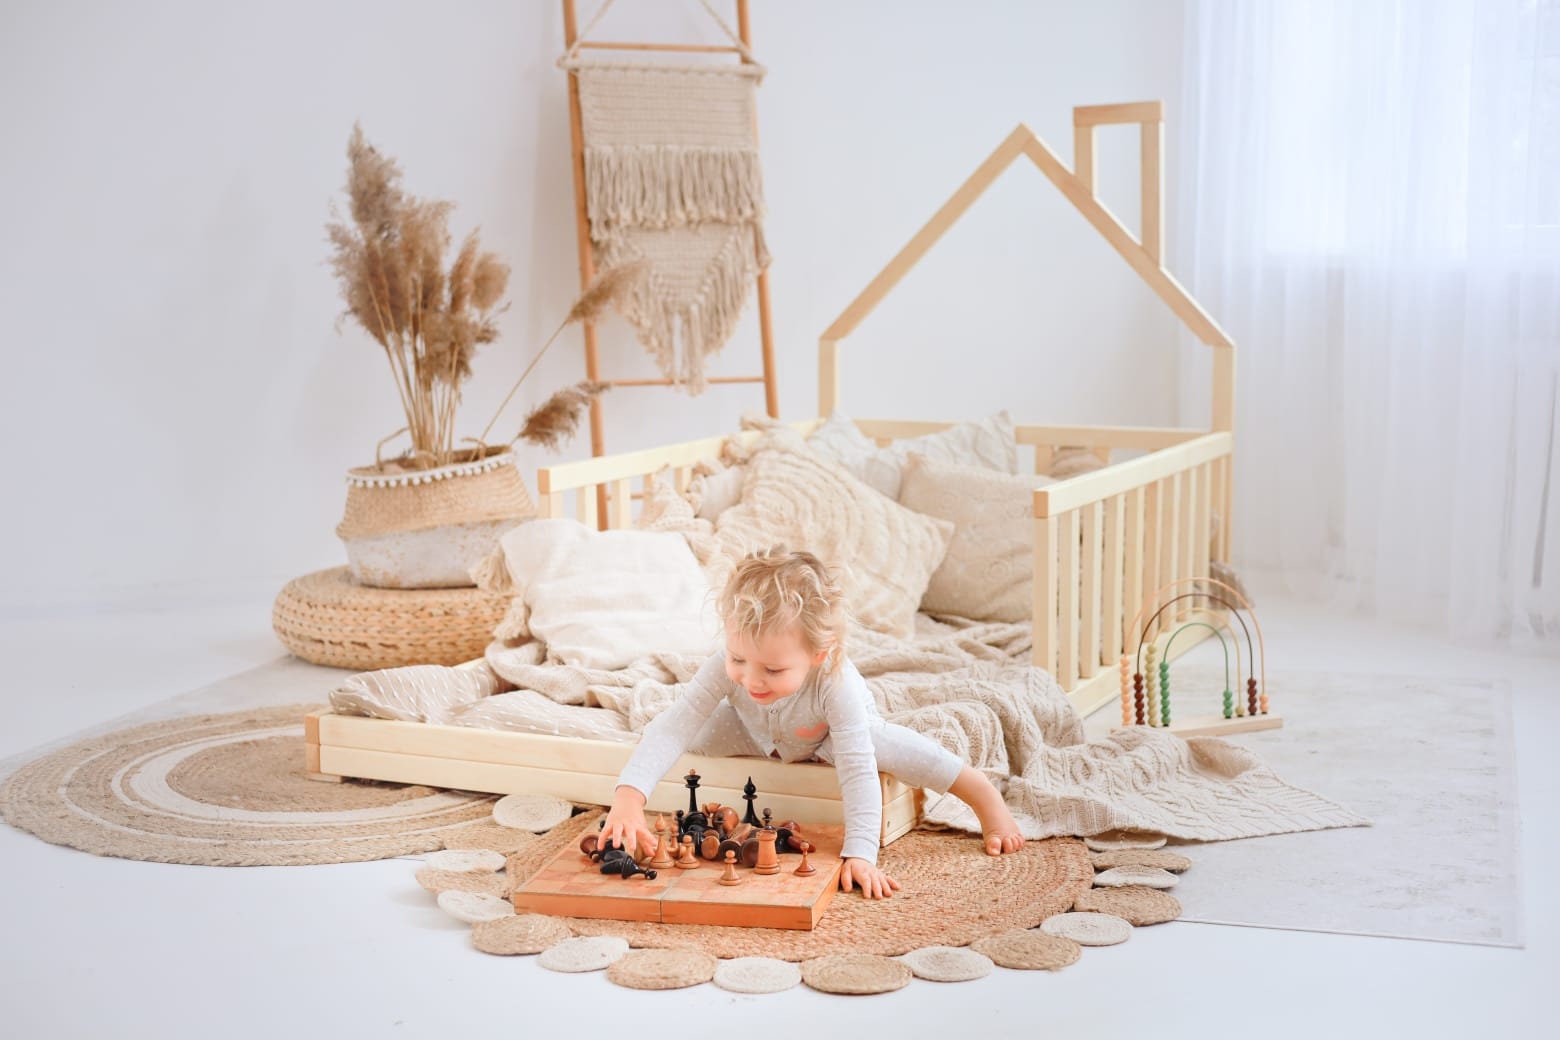 NUEVO Cama de suelo para niños pequeños con listones, cama Montessori, cama  de suelo,  -  España